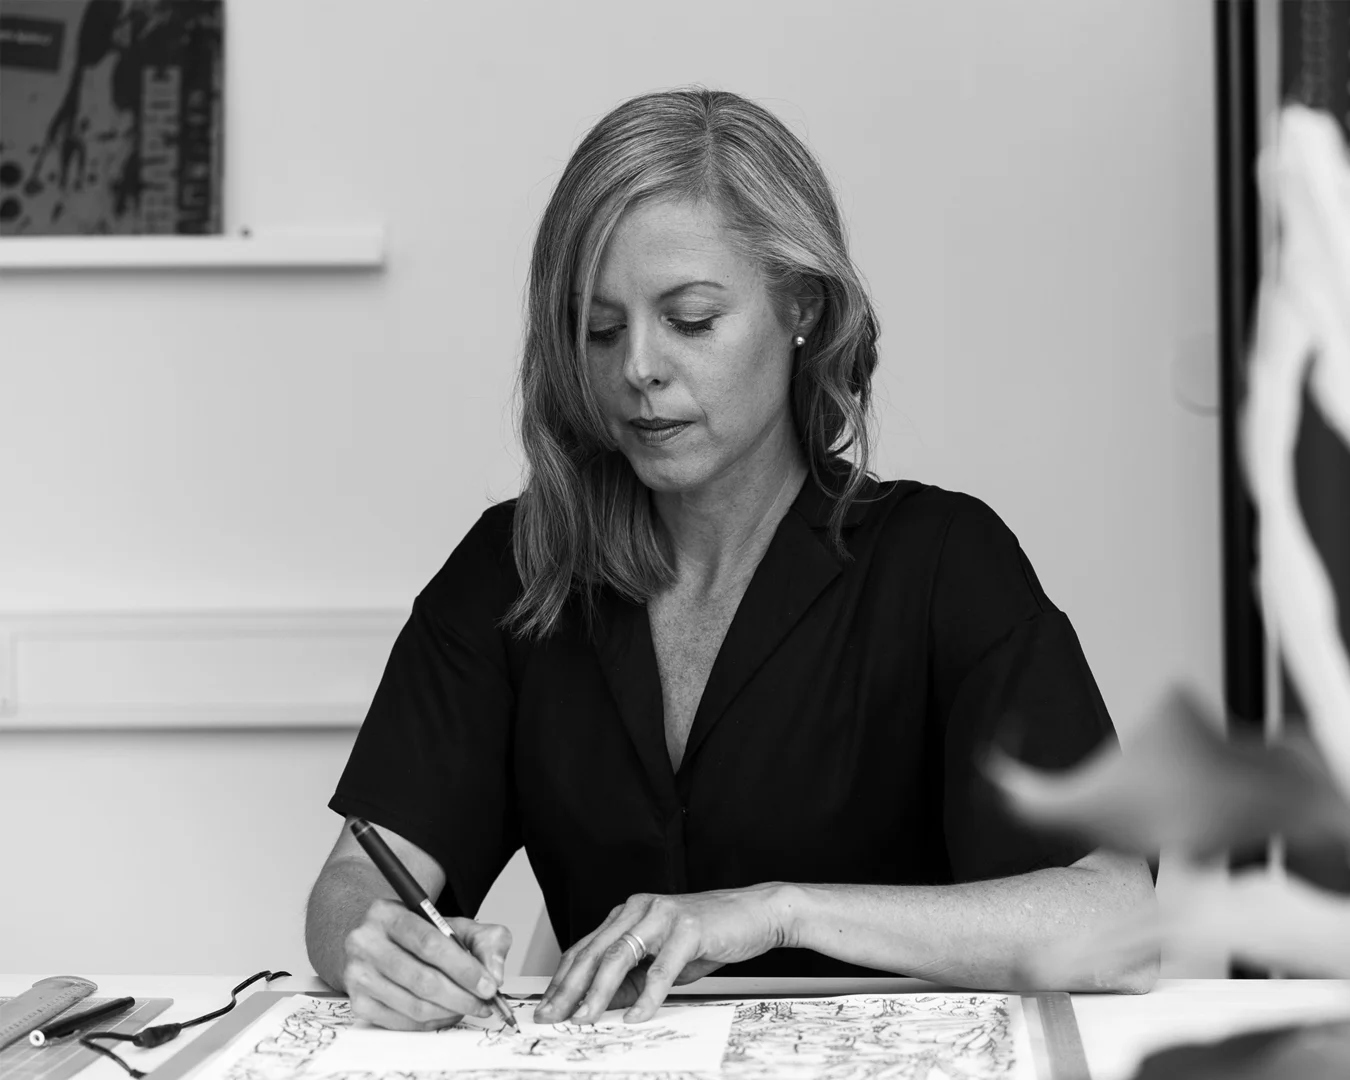 Svart och vit bild, ljushårig kvinna centrerad med huvudet blickande nedåt, håller i en penna och skissar på ett papper -NyStudio